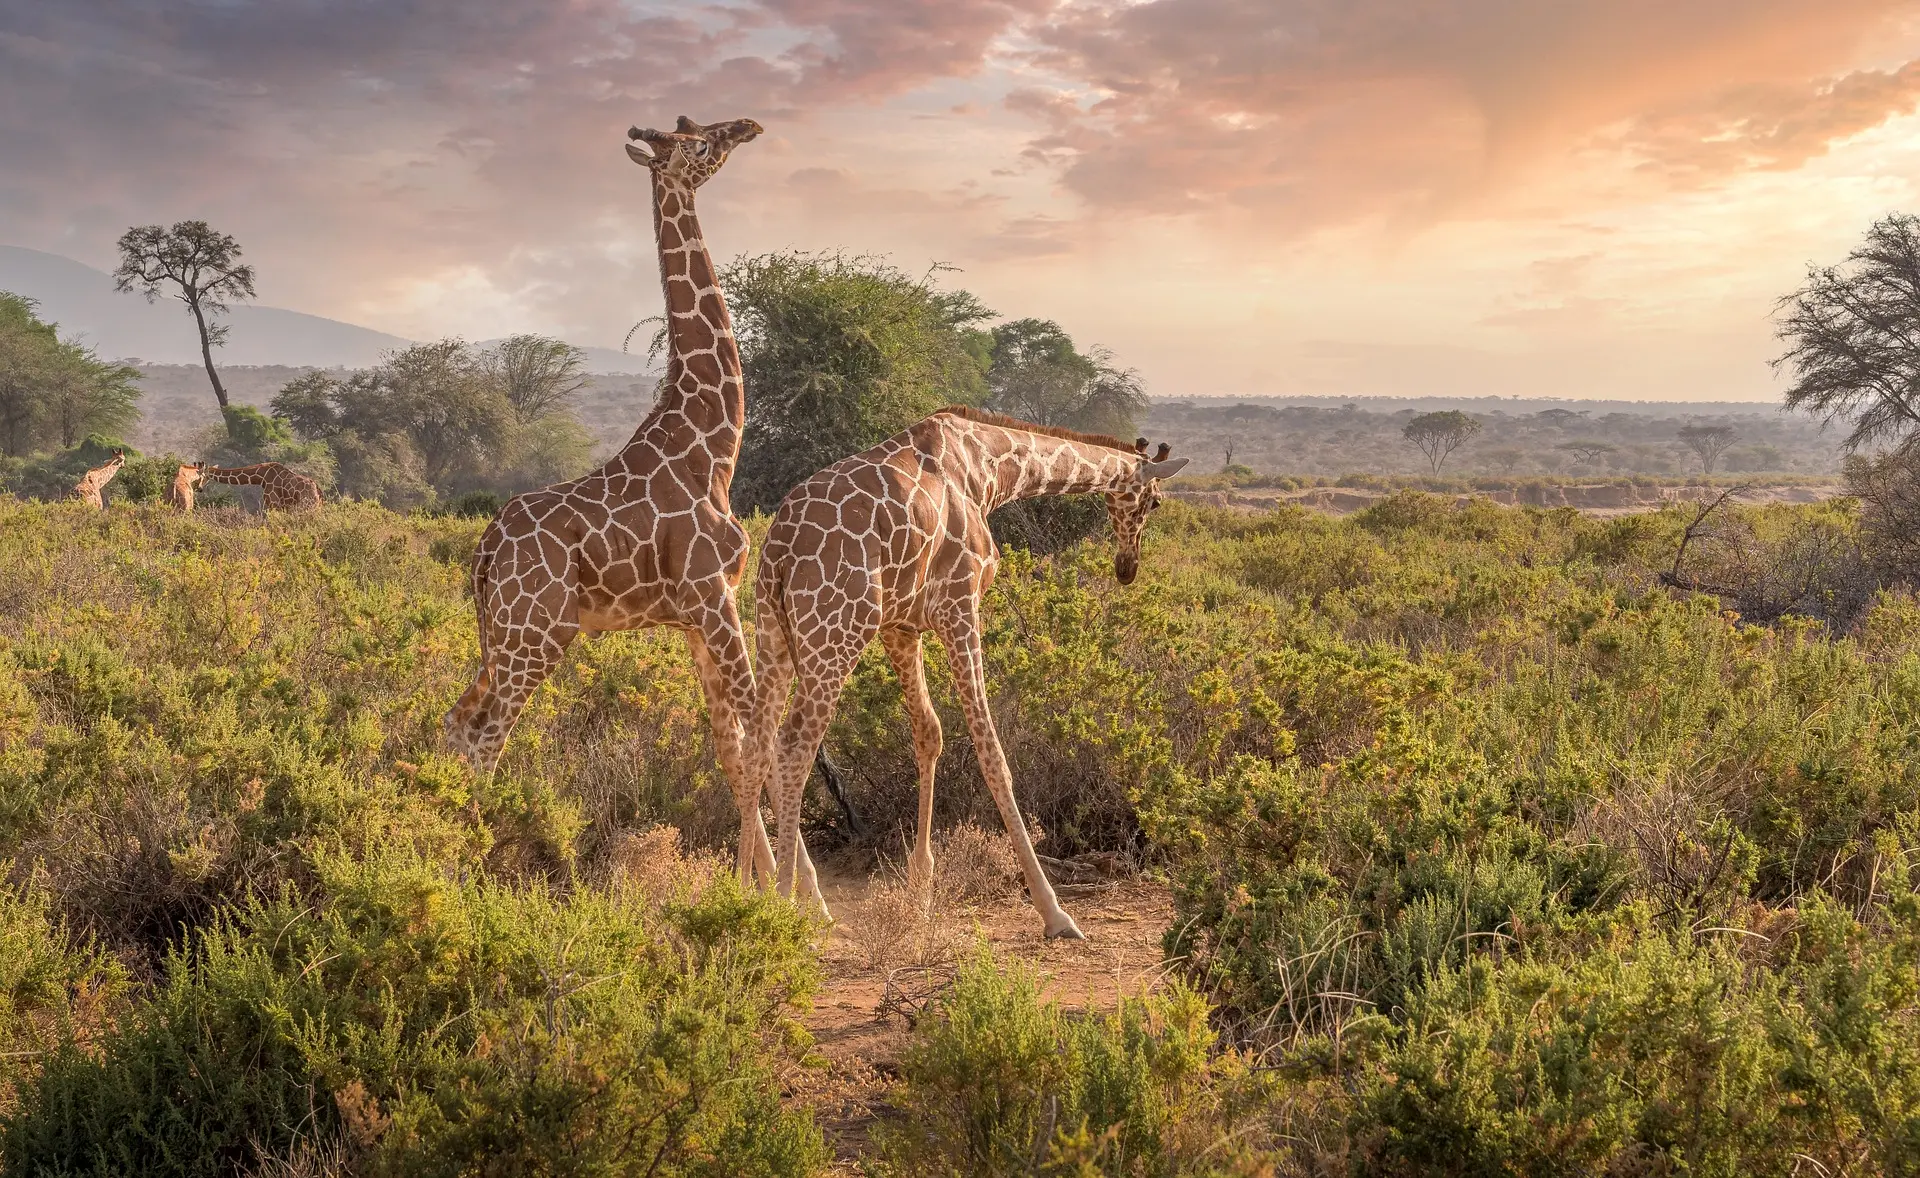 Kenya safari packages in the Tsavo East National Park and tsavo west national park